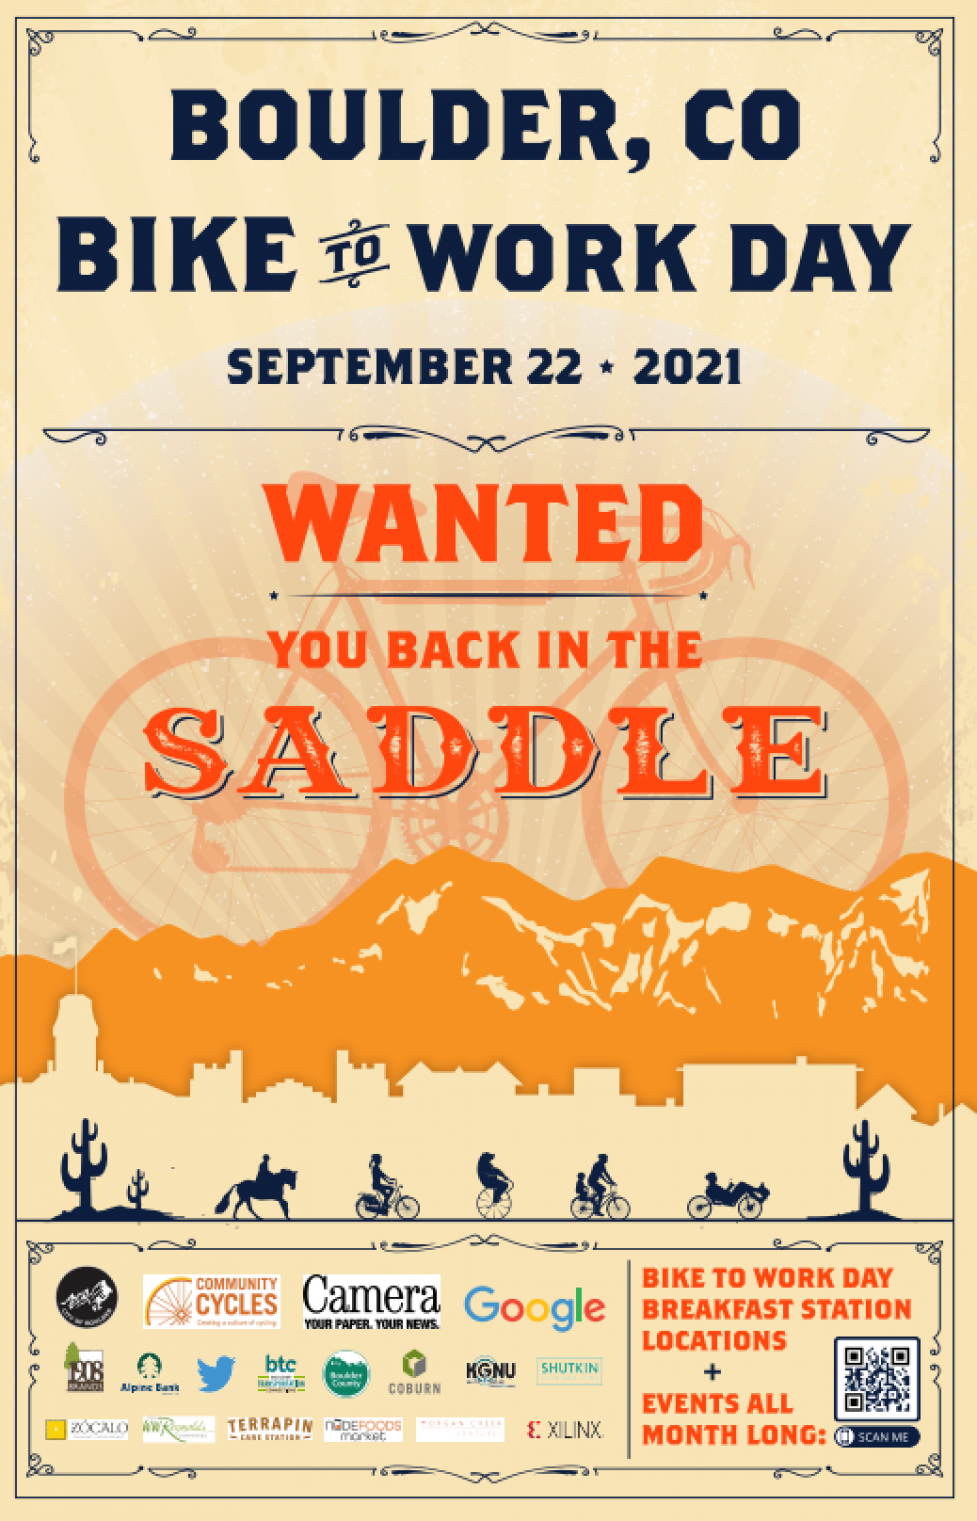 September 22 is Bike to Work Day in Boulder City of Boulder